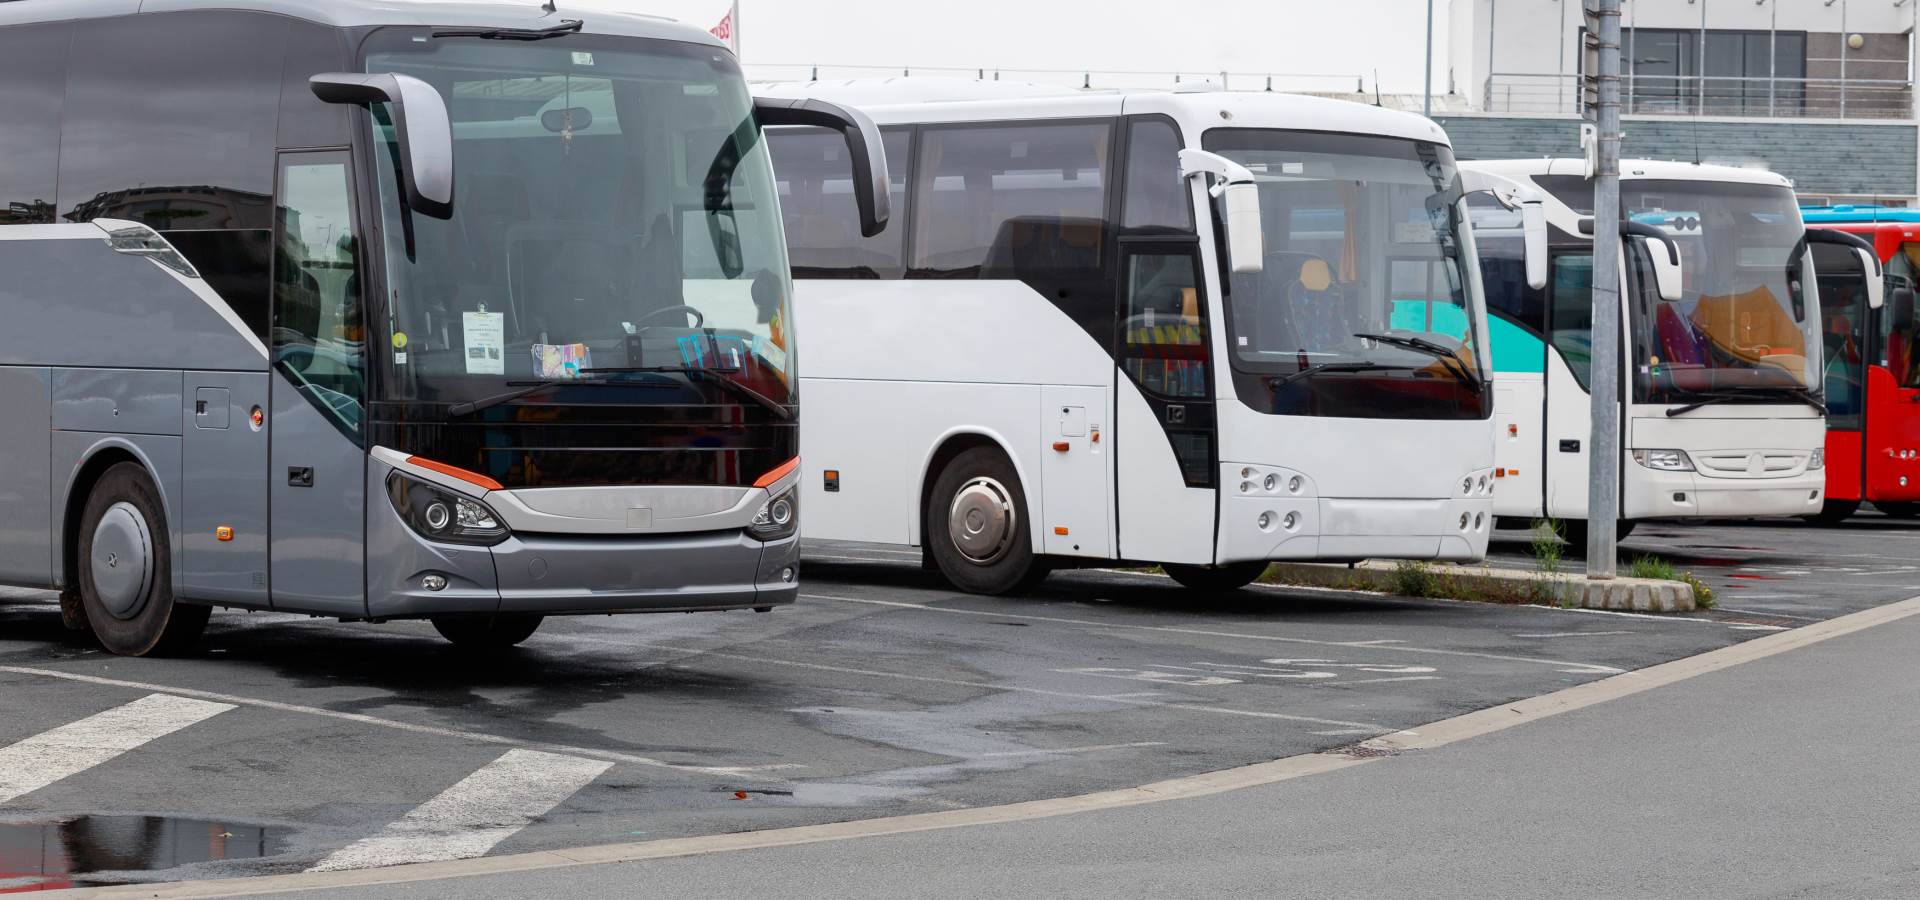  Ukradeno 250 litara goriva iz autobusa u Trebinju 